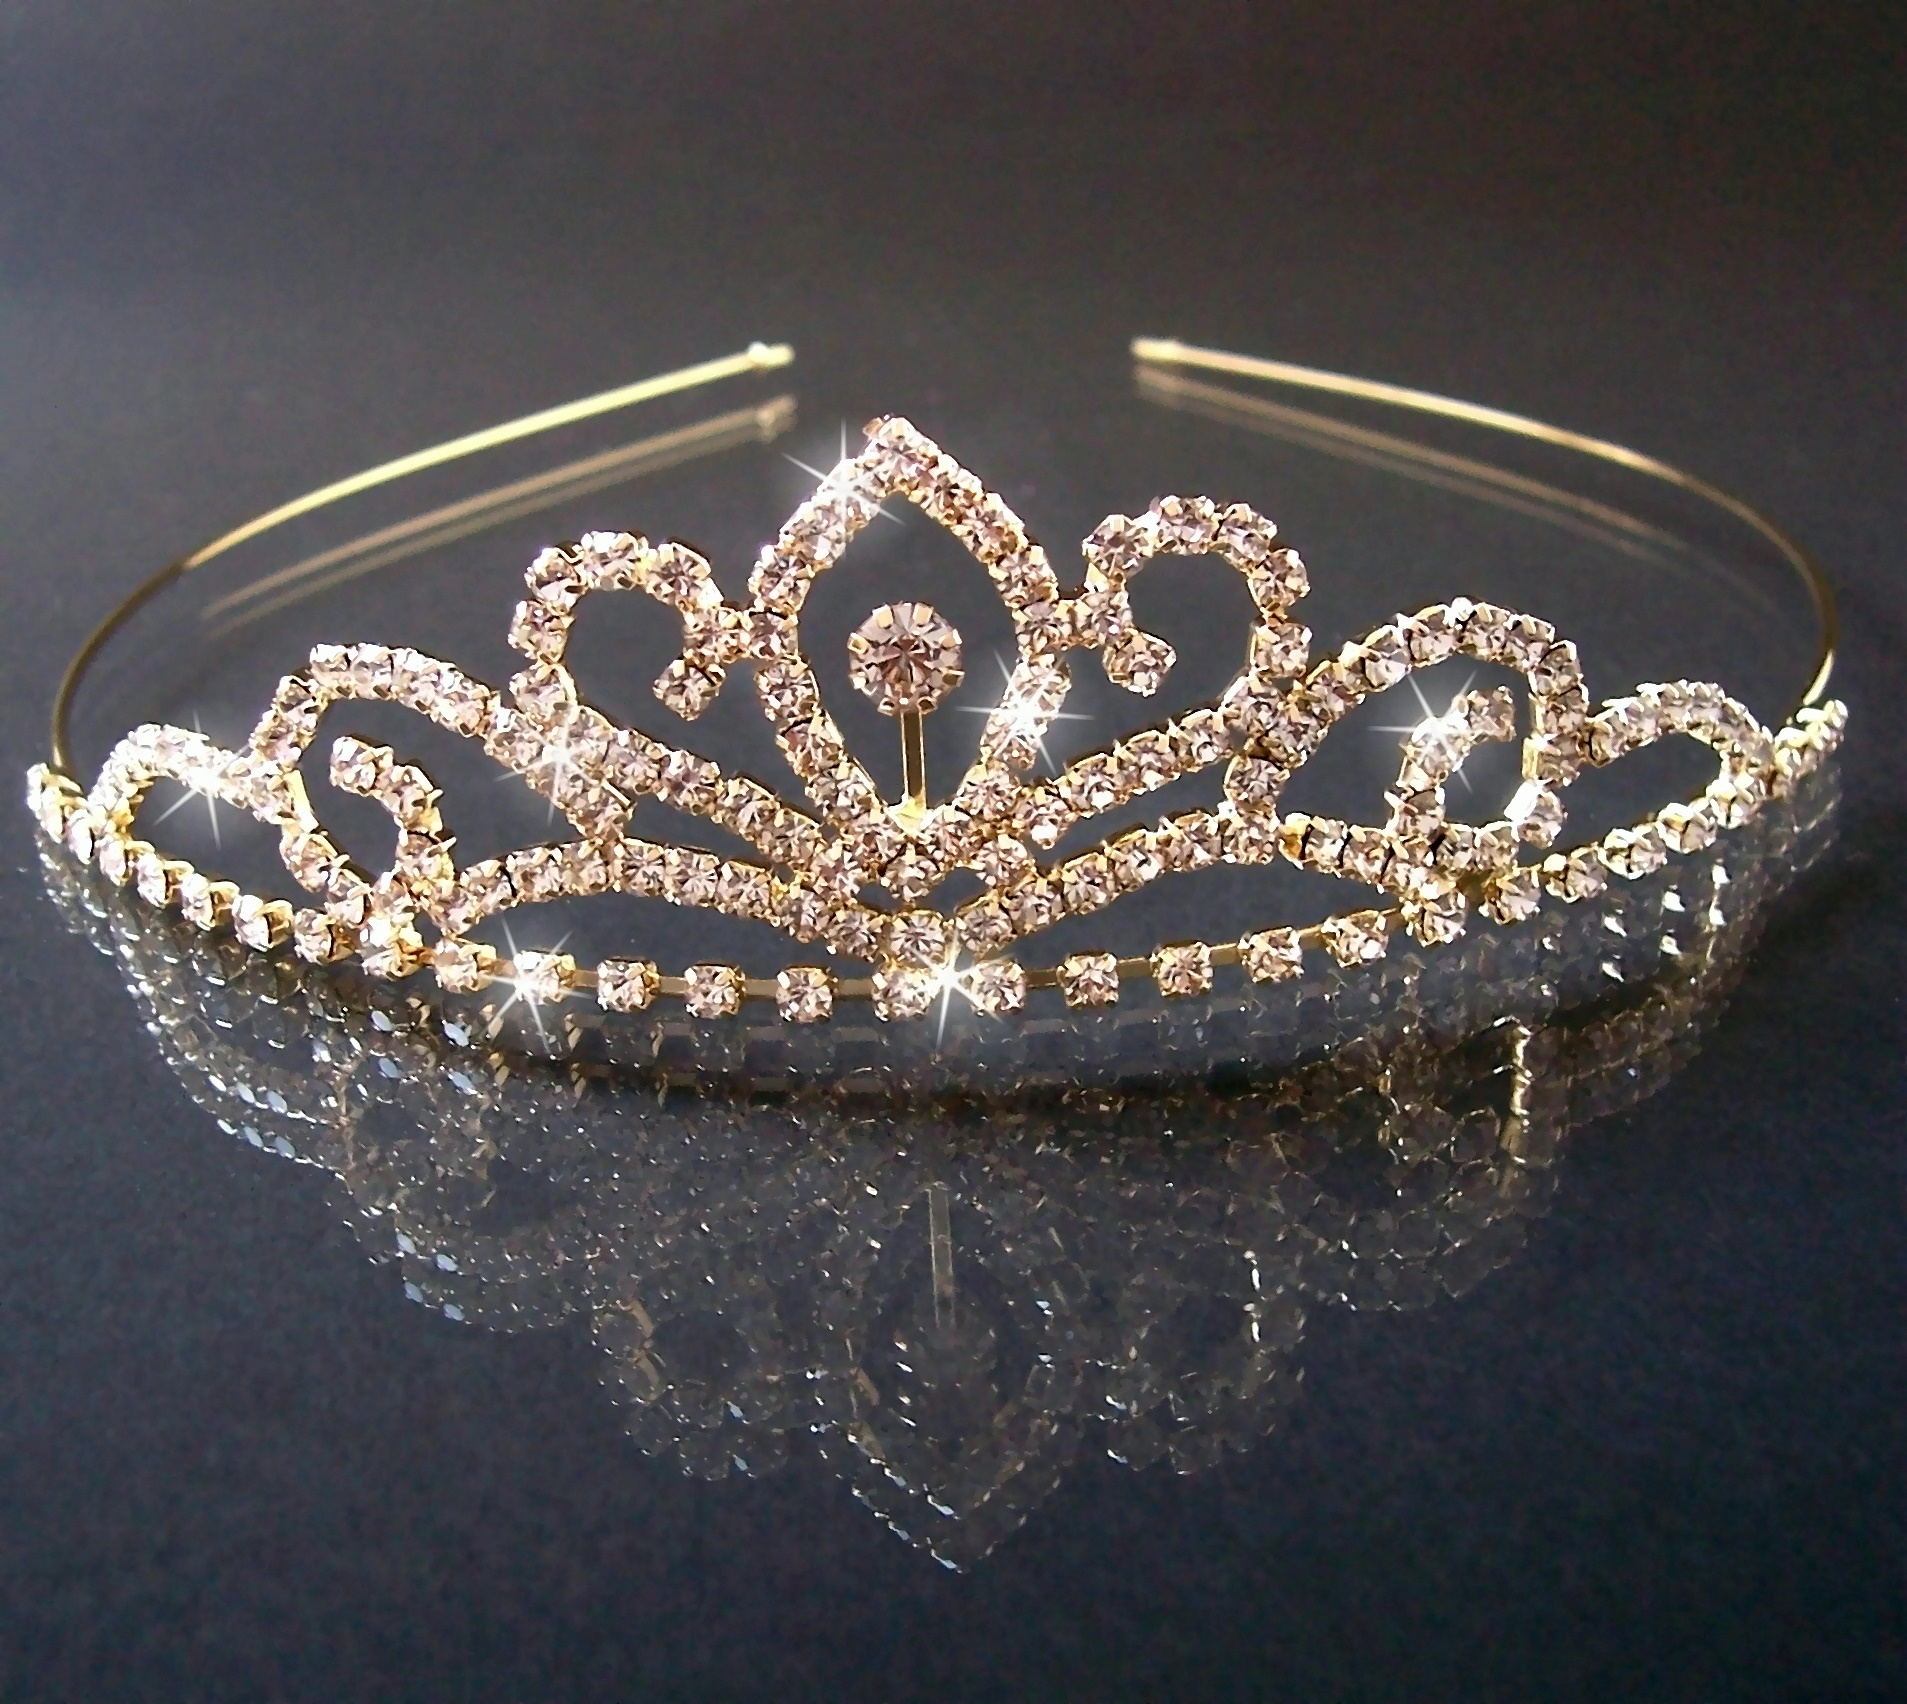 Silber Minkissy Strass Brautkrone Exquisite Legierung Kristall Tiara Haar Reifen Kopfbedeckung Hochzeit Haarschmuck